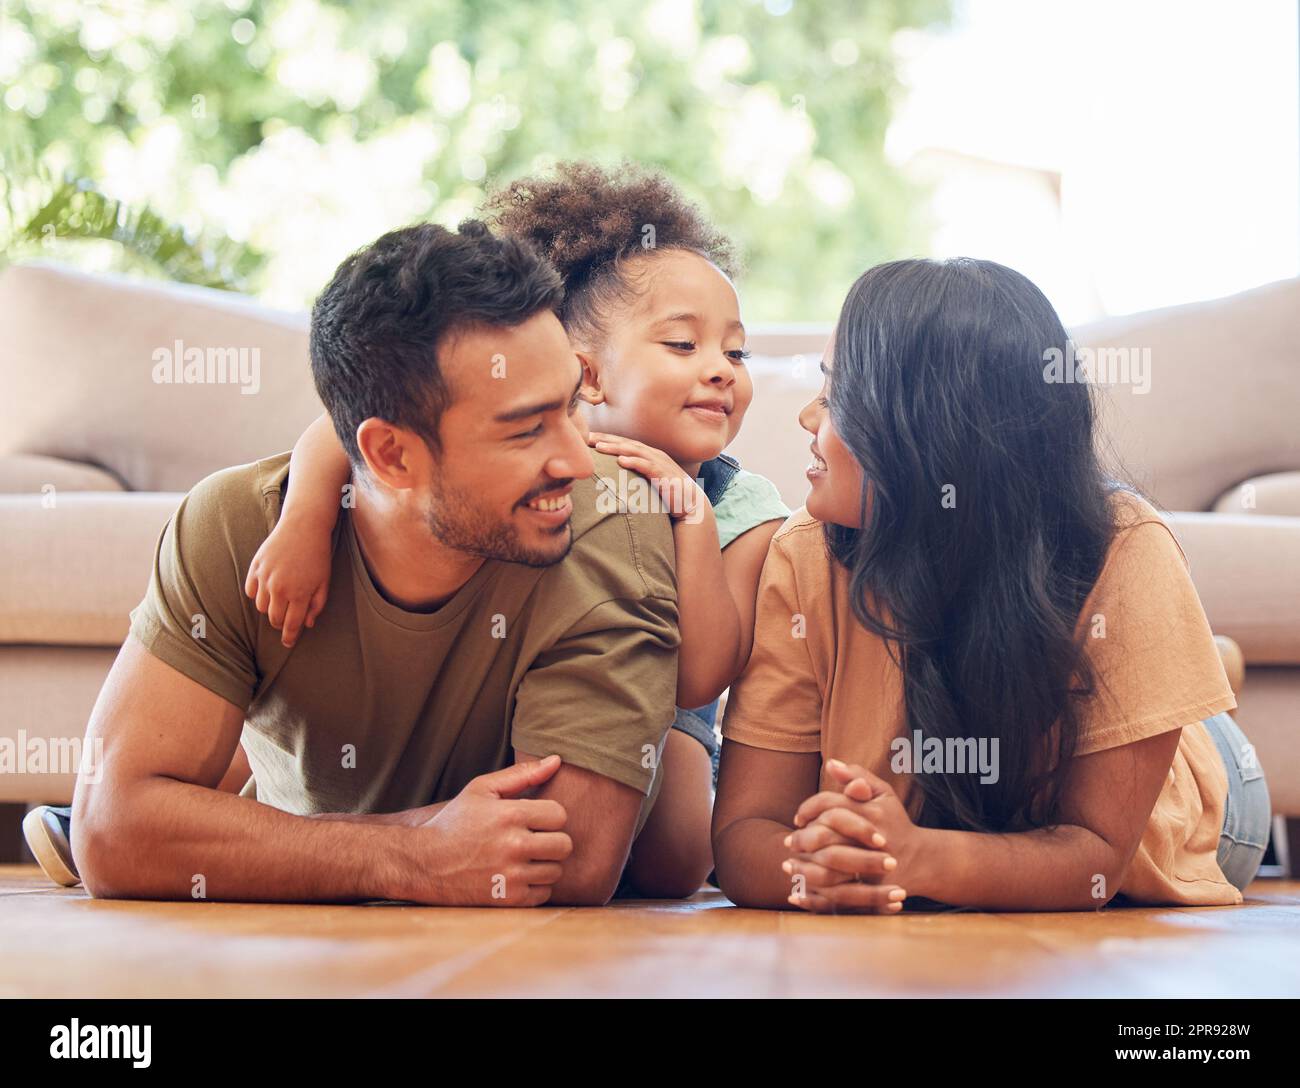 Tellement d'amour dans une seule photo. Photo en longueur d'une jeune famille affectueuse de trois personnes qui se trouve à l'étage du salon à la maison. Banque D'Images